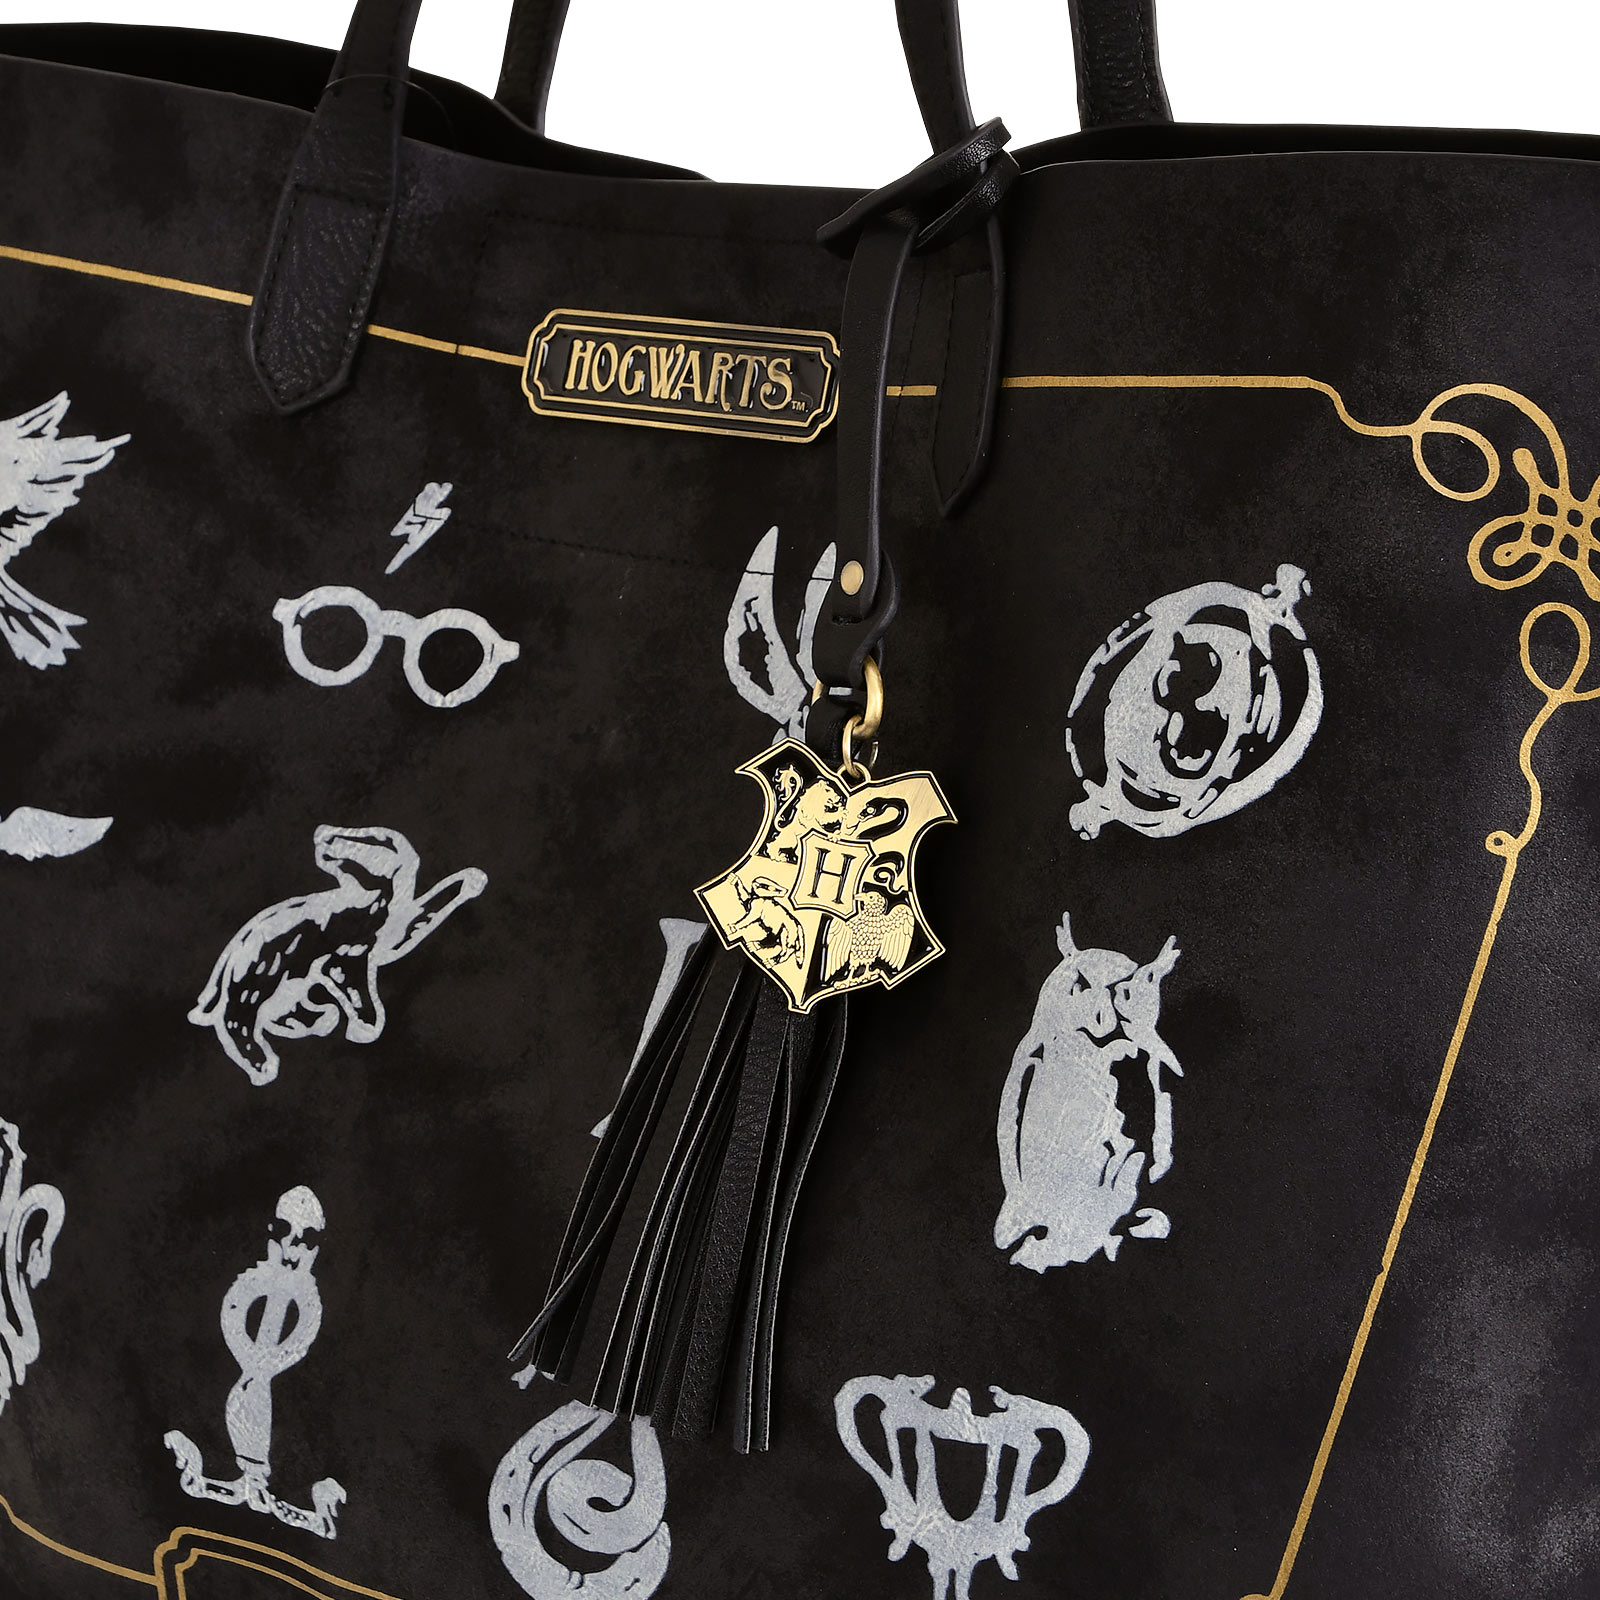 Harry Potter - Hogwarts Symbols Shopper Bag